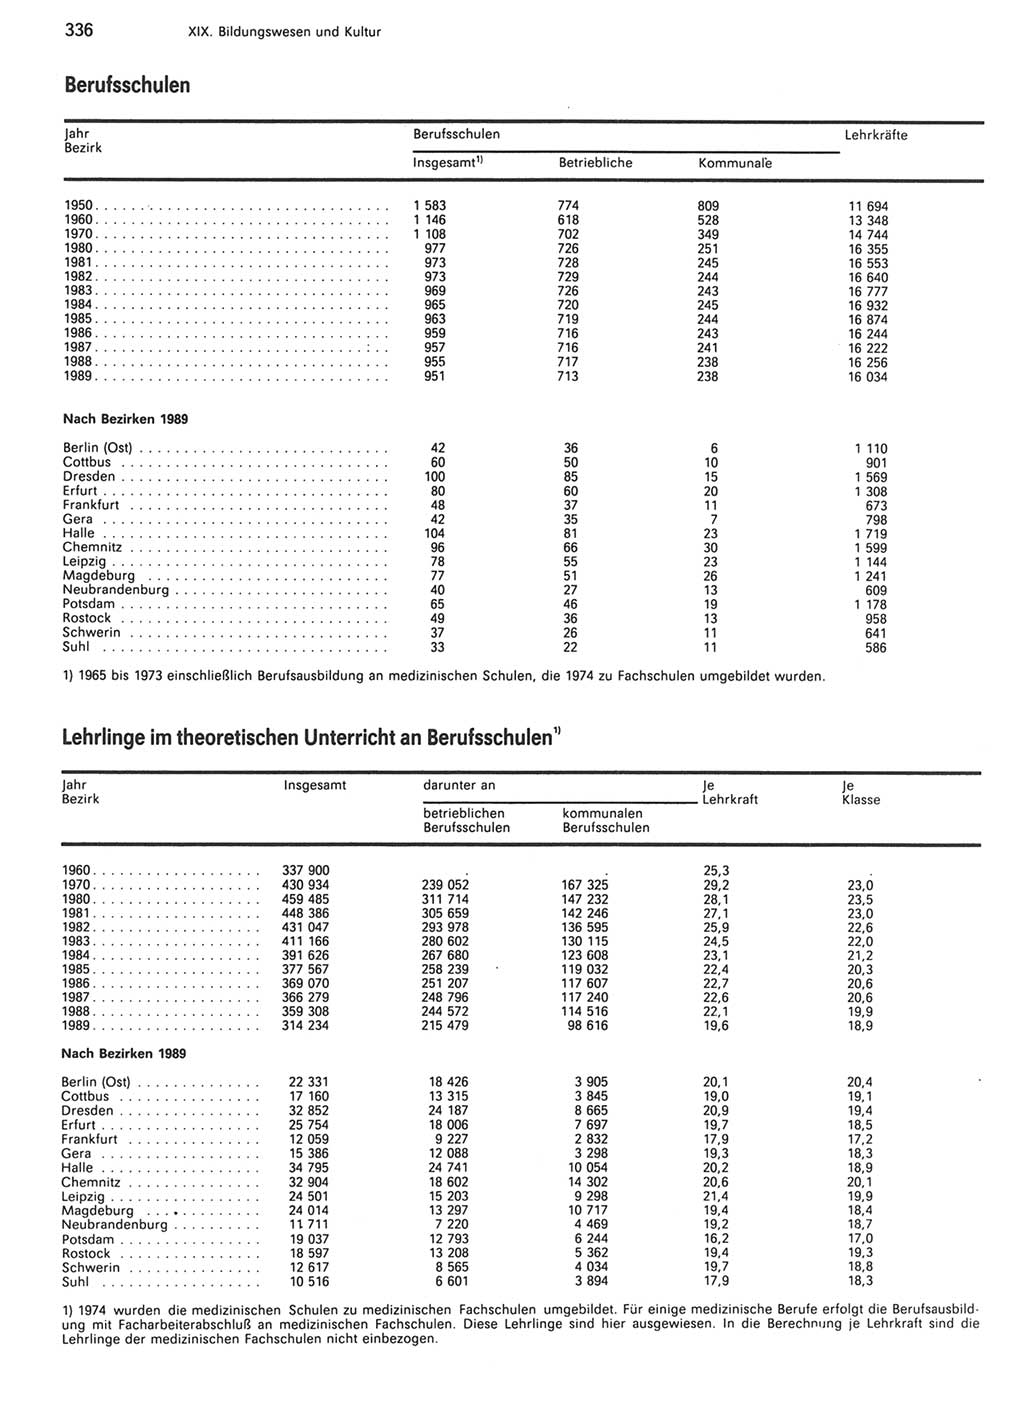 Statistisches Jahrbuch der Deutschen Demokratischen Republik (DDR) 1990, Seite 336 (Stat. Jb. DDR 1990, S. 336)